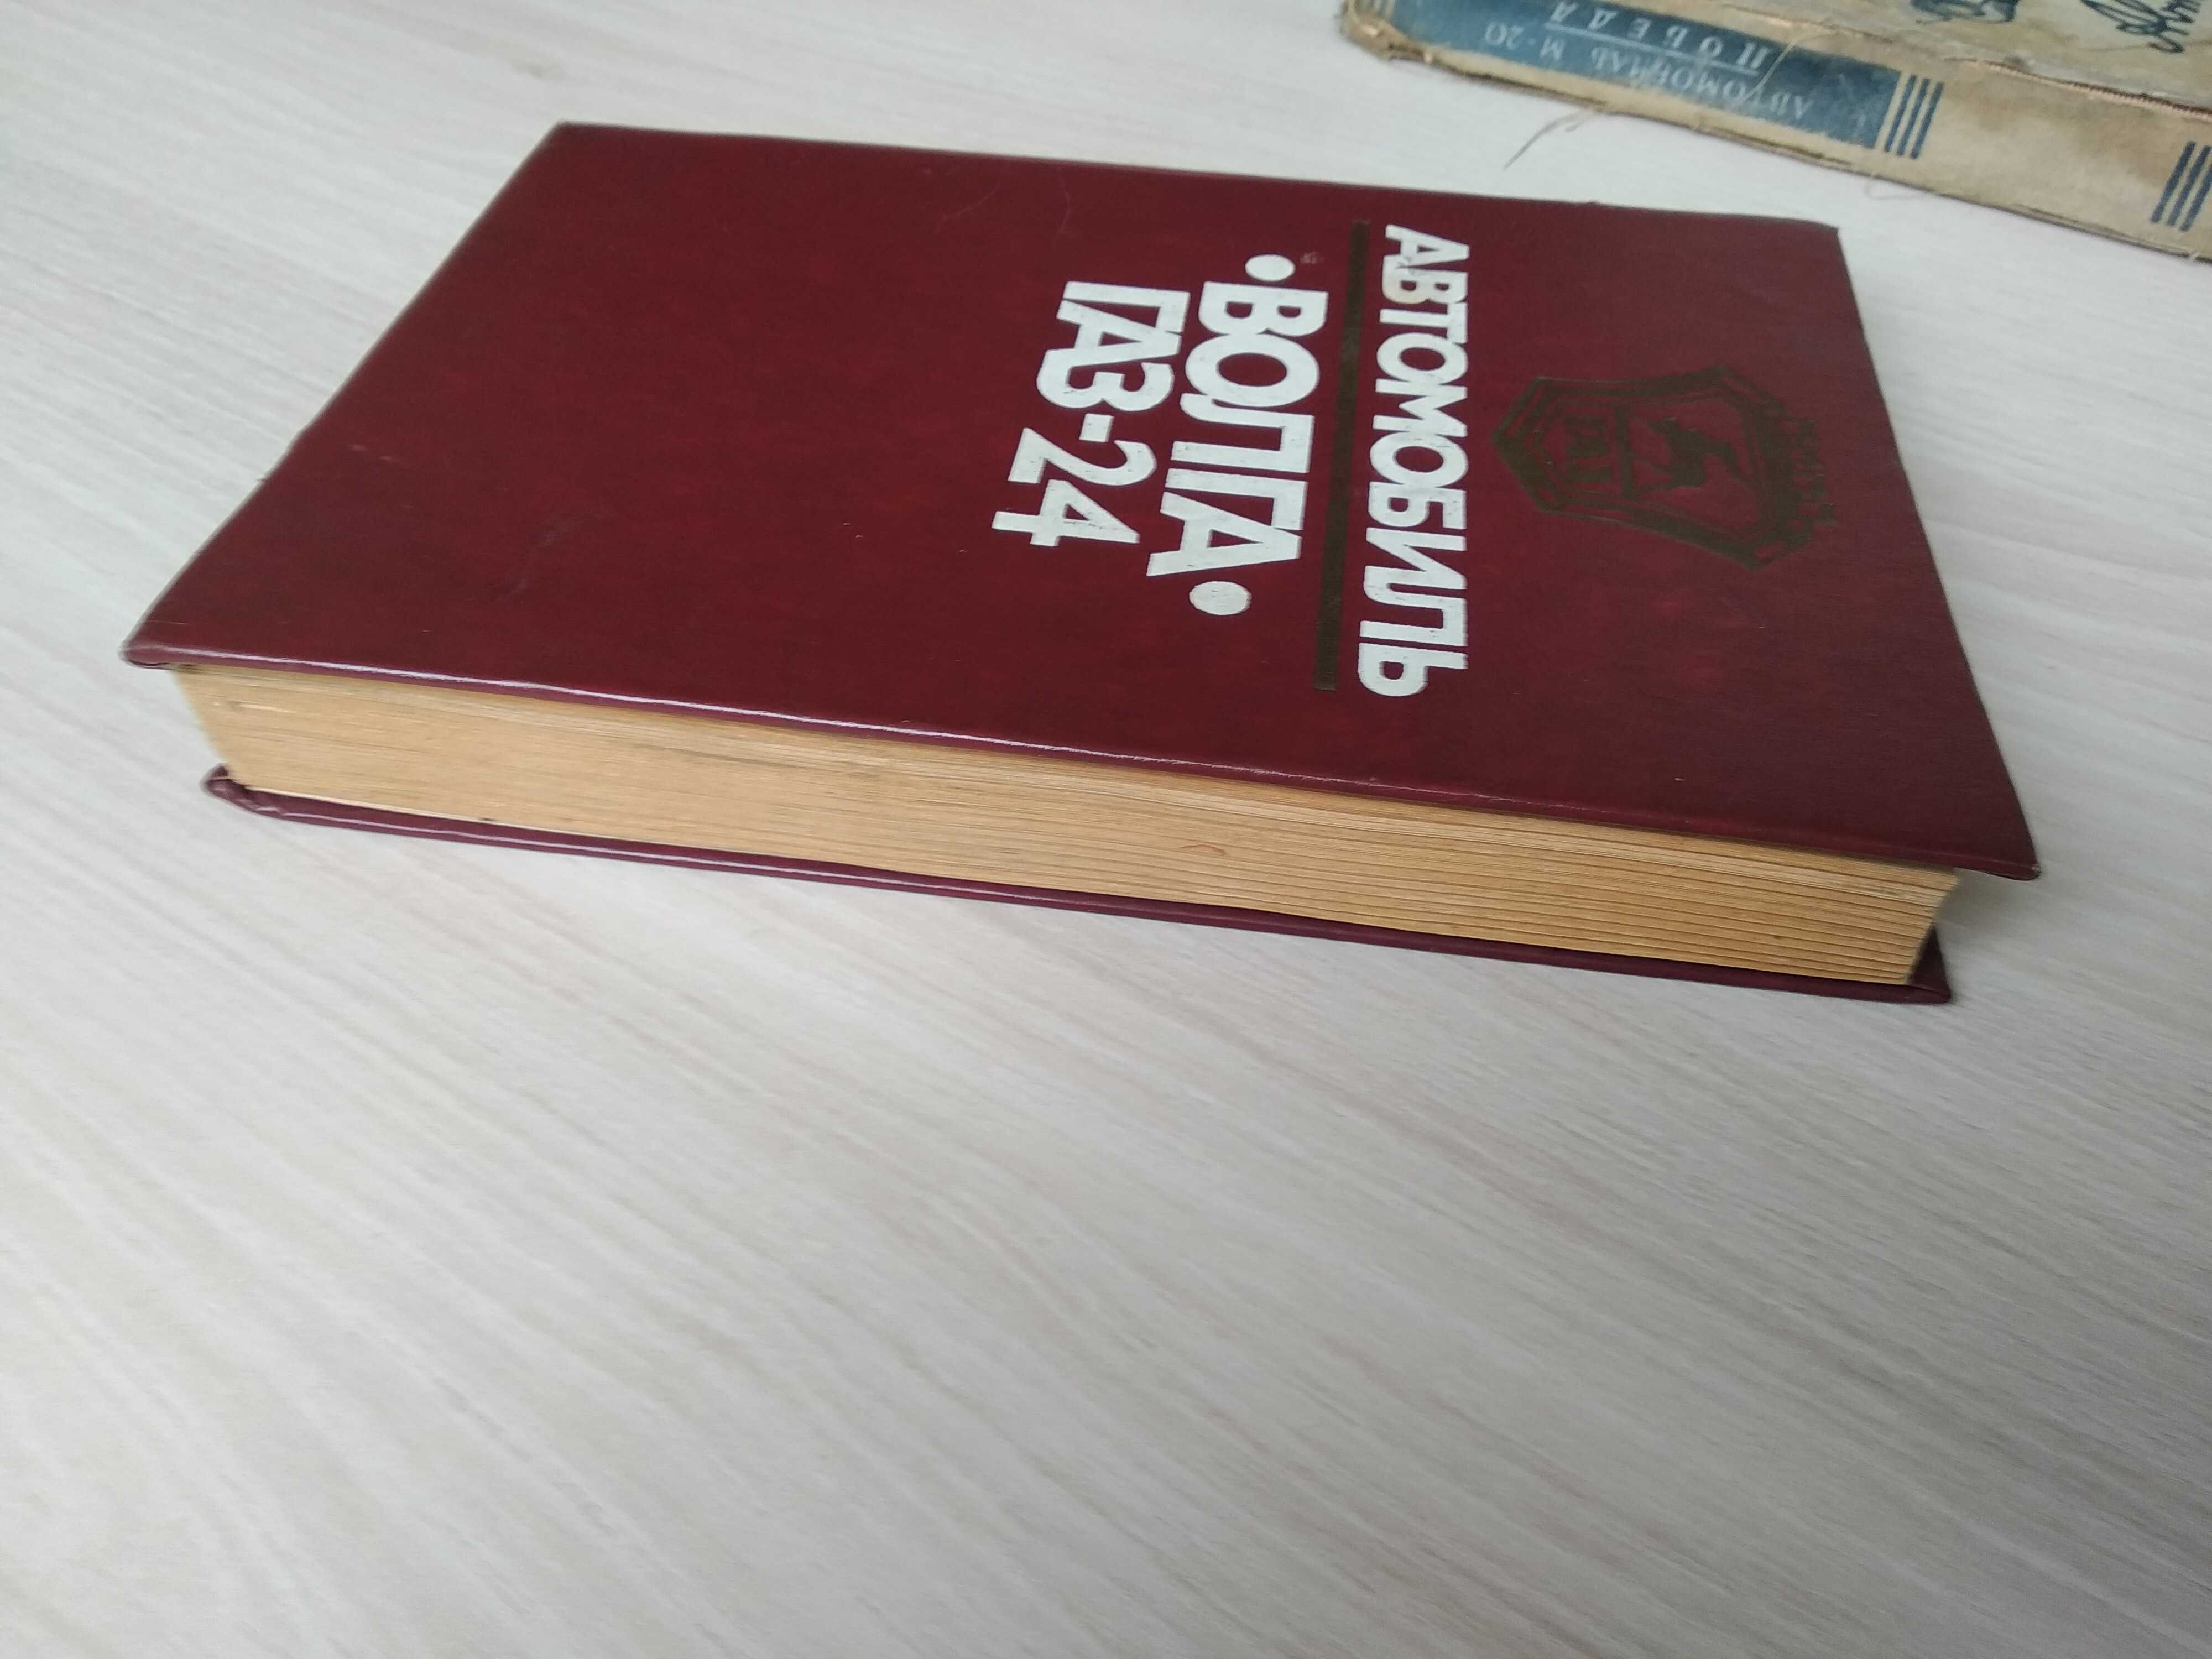 Книга "Автомобиль Волга ГАЗ-24" (особенности, обслуживание и ремонт)